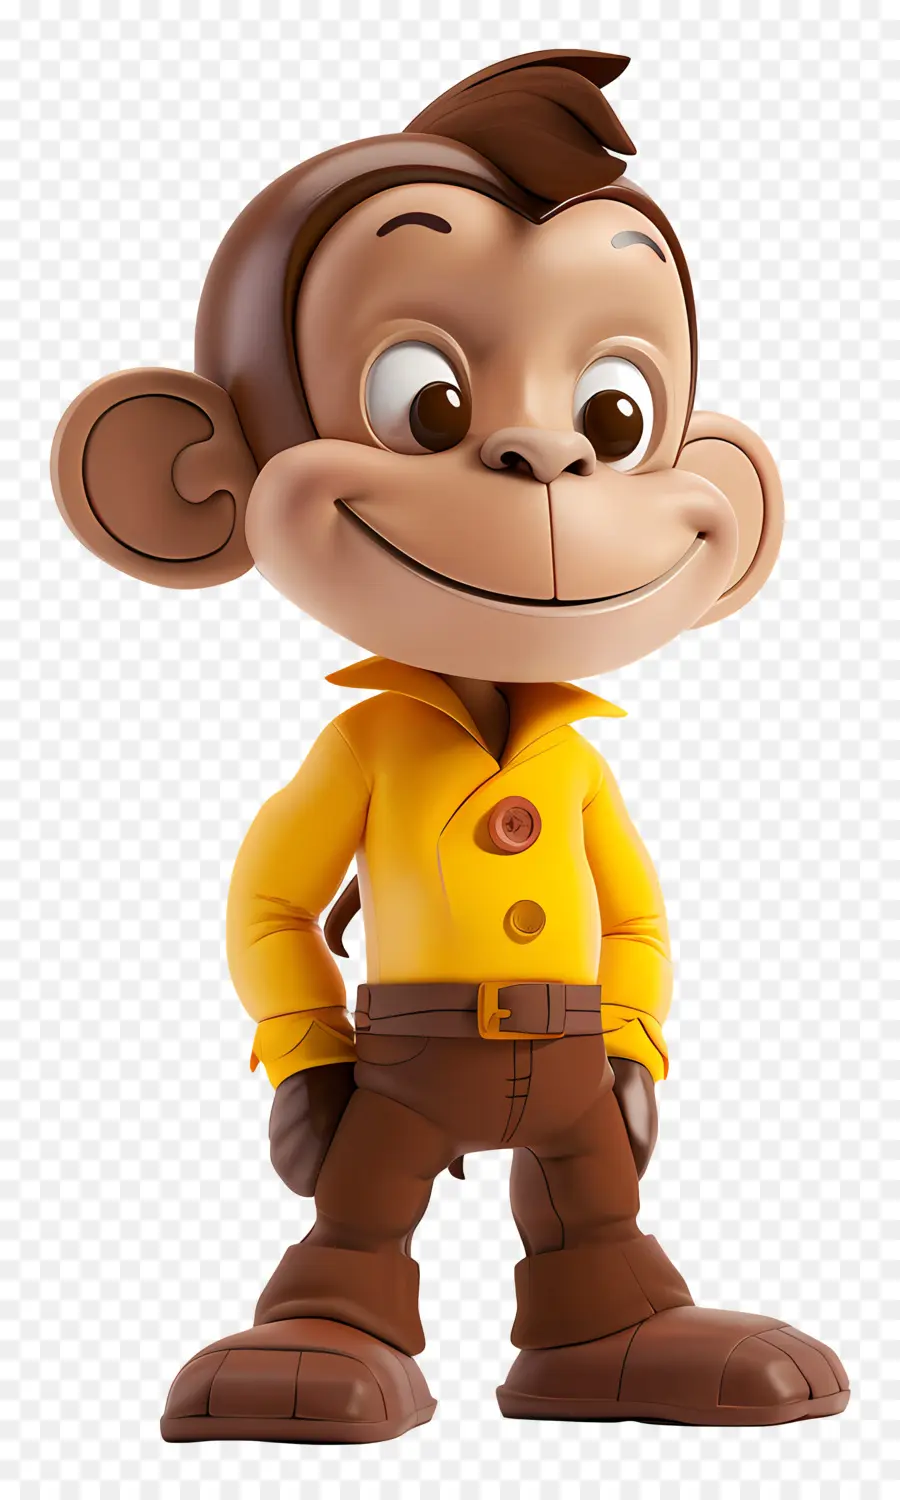 Neugieriger George Monkey Charakter Gelbes Hemd braune Hosen brauner Hut - Happy Affencharakter im gelben Hemd